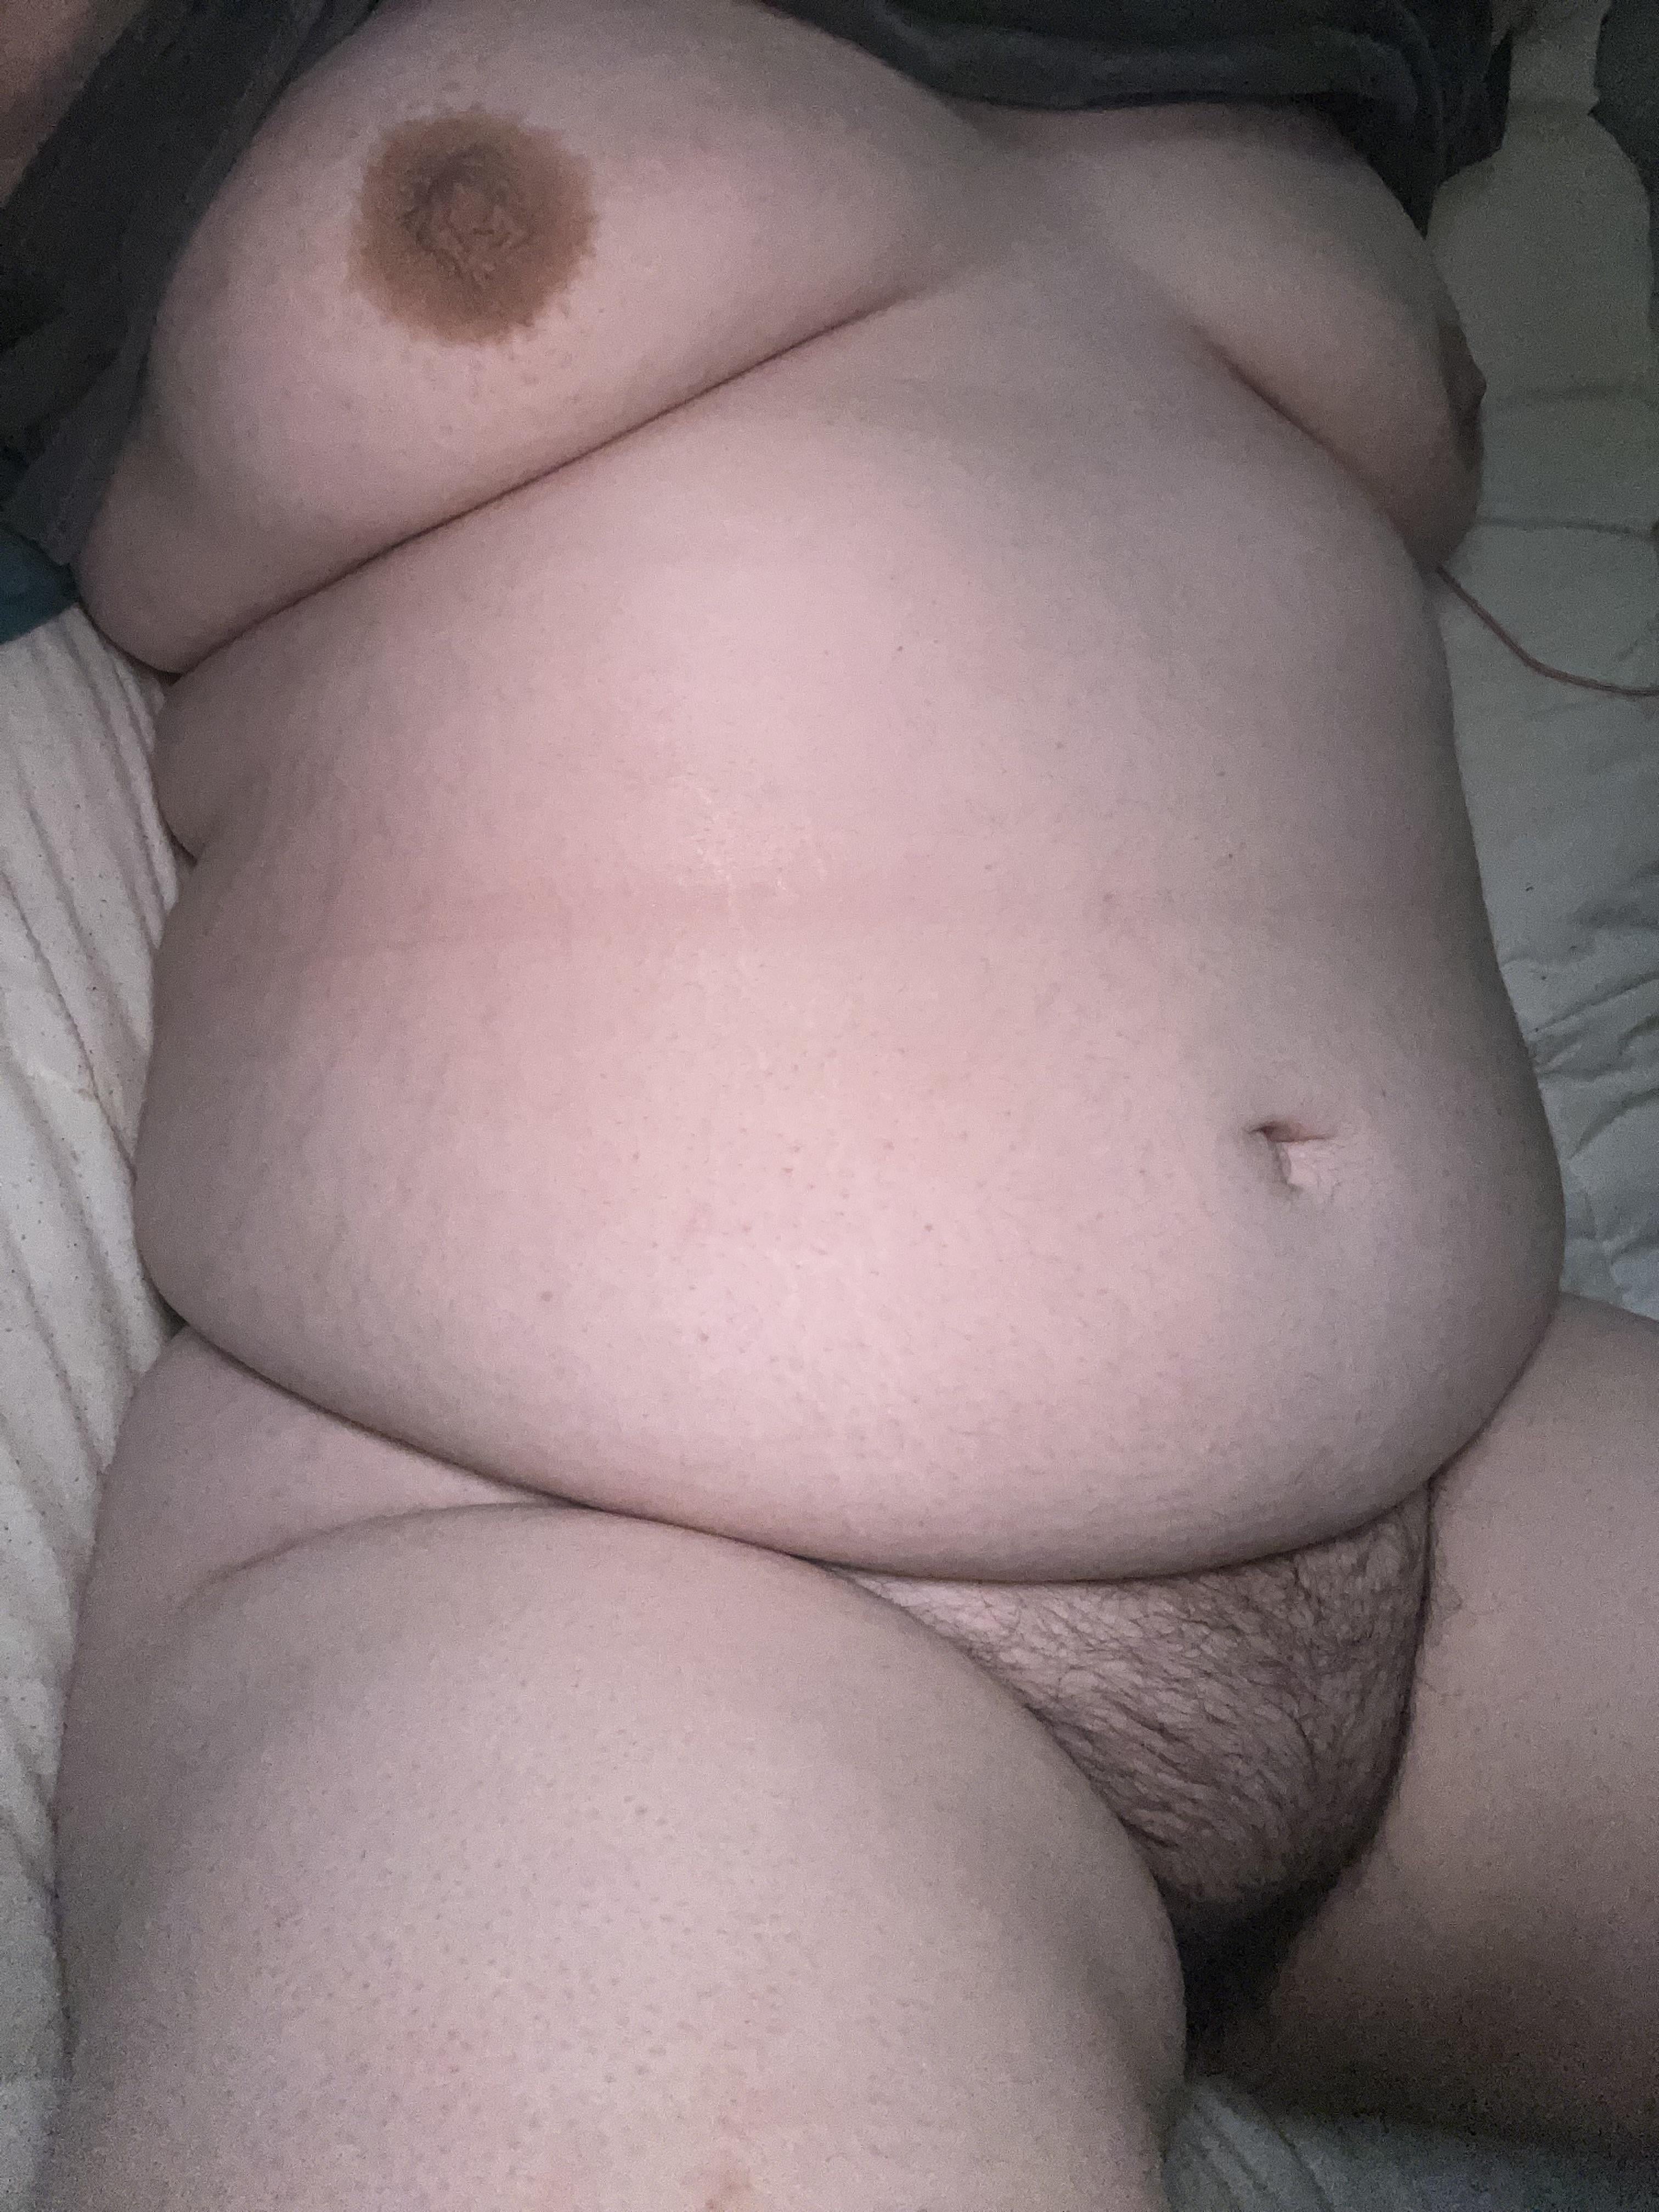 I hope you like chubby girls